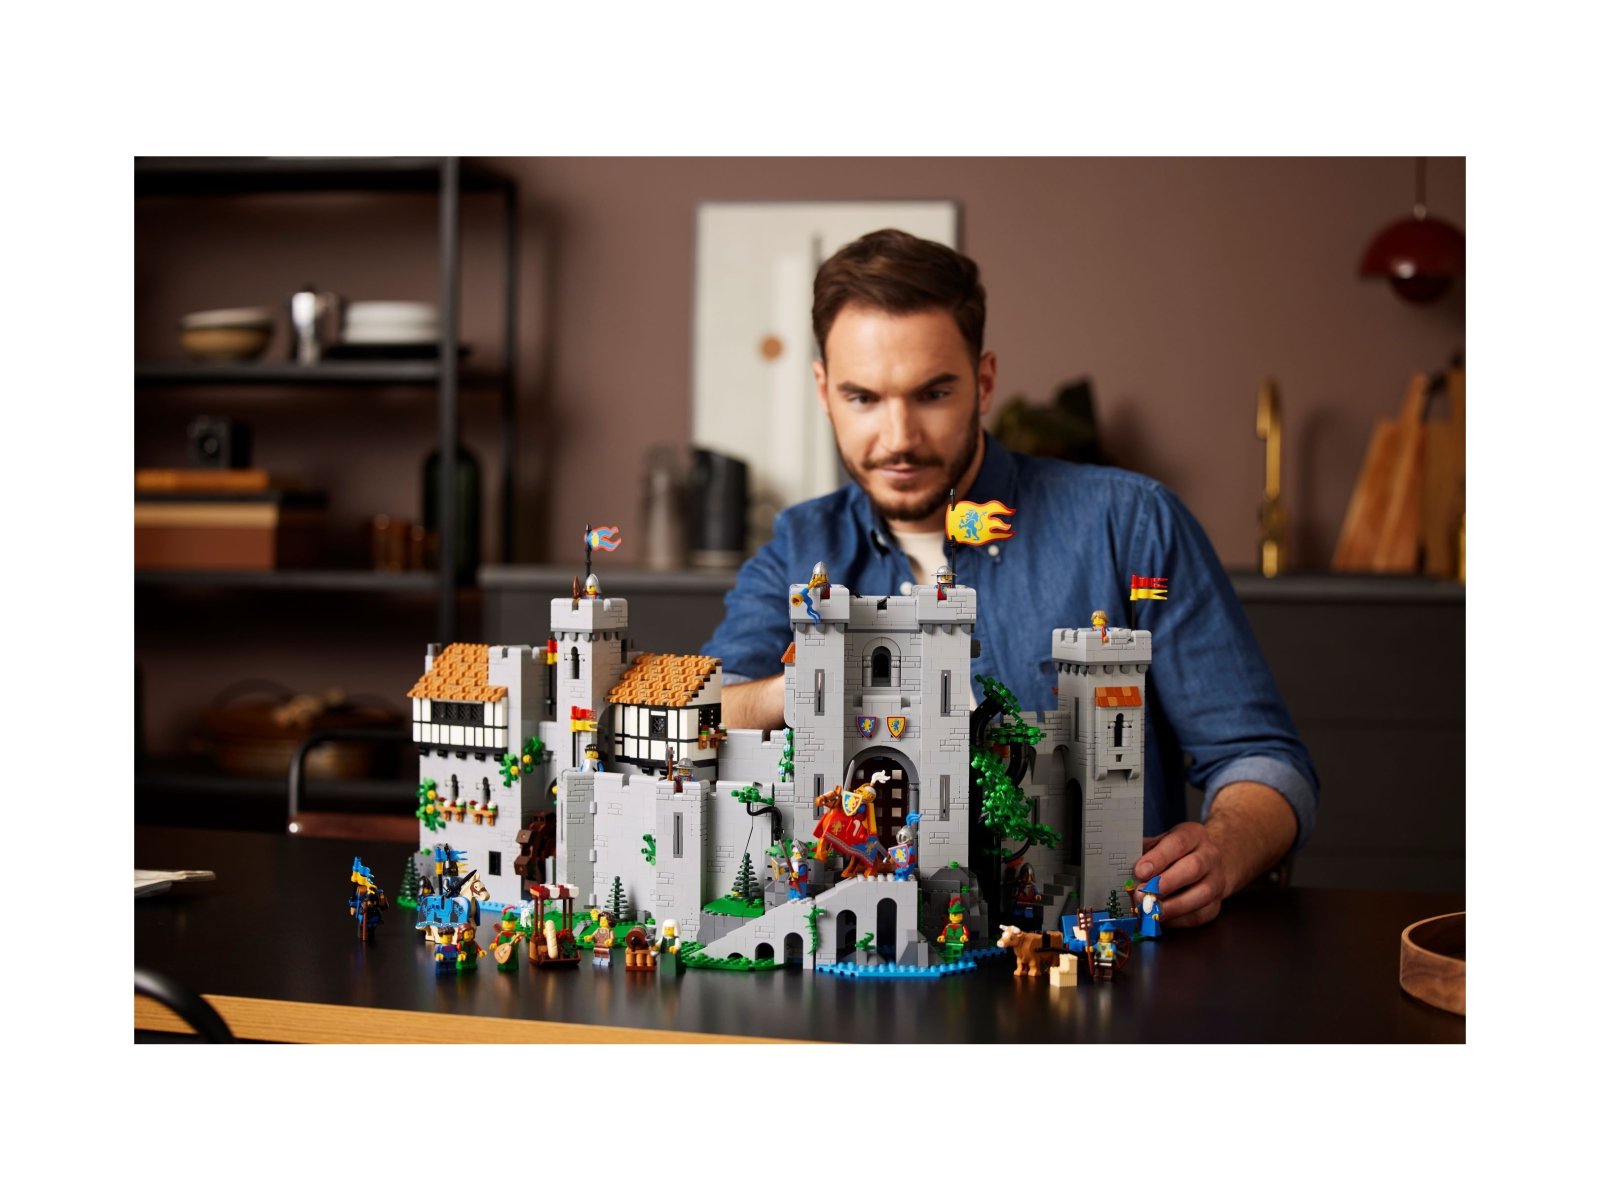 LEGO 10305 Zamek rycerzy herbu Lew